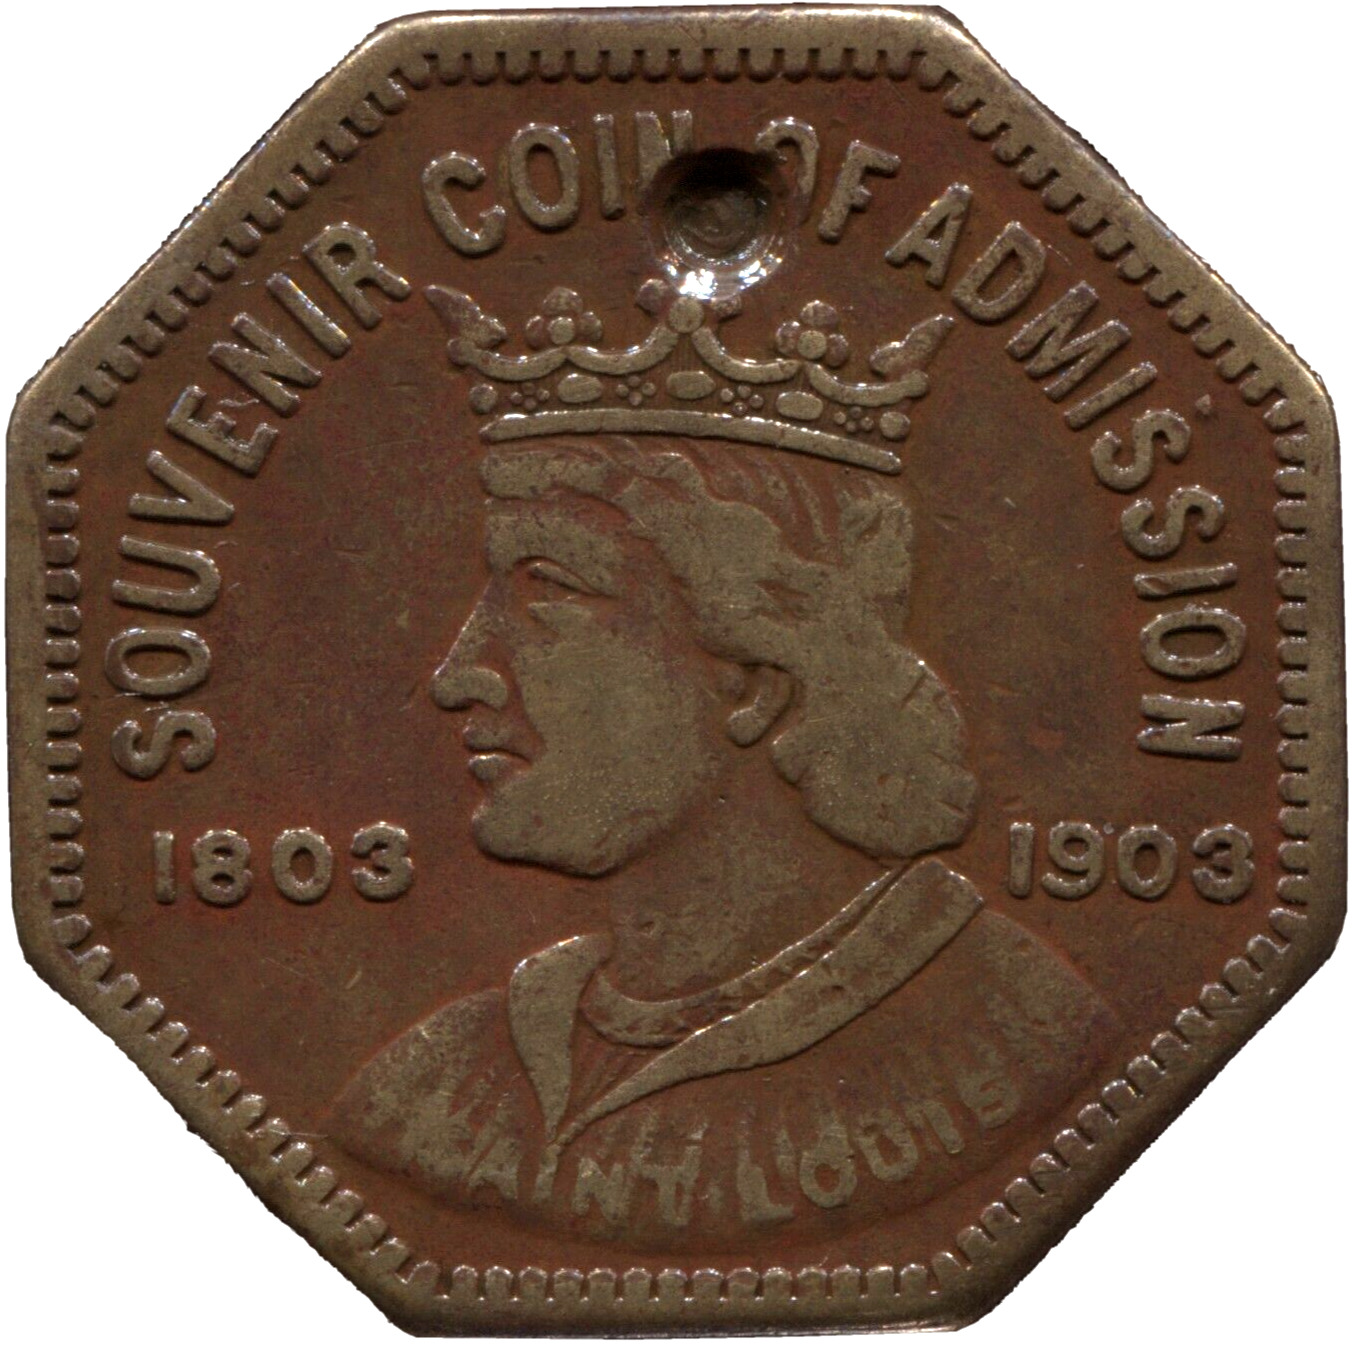 1904 MO HK 306 - SC$1 - R 4 - L.P.E. Souvenir Coin of Admission - Lot # TT 3192